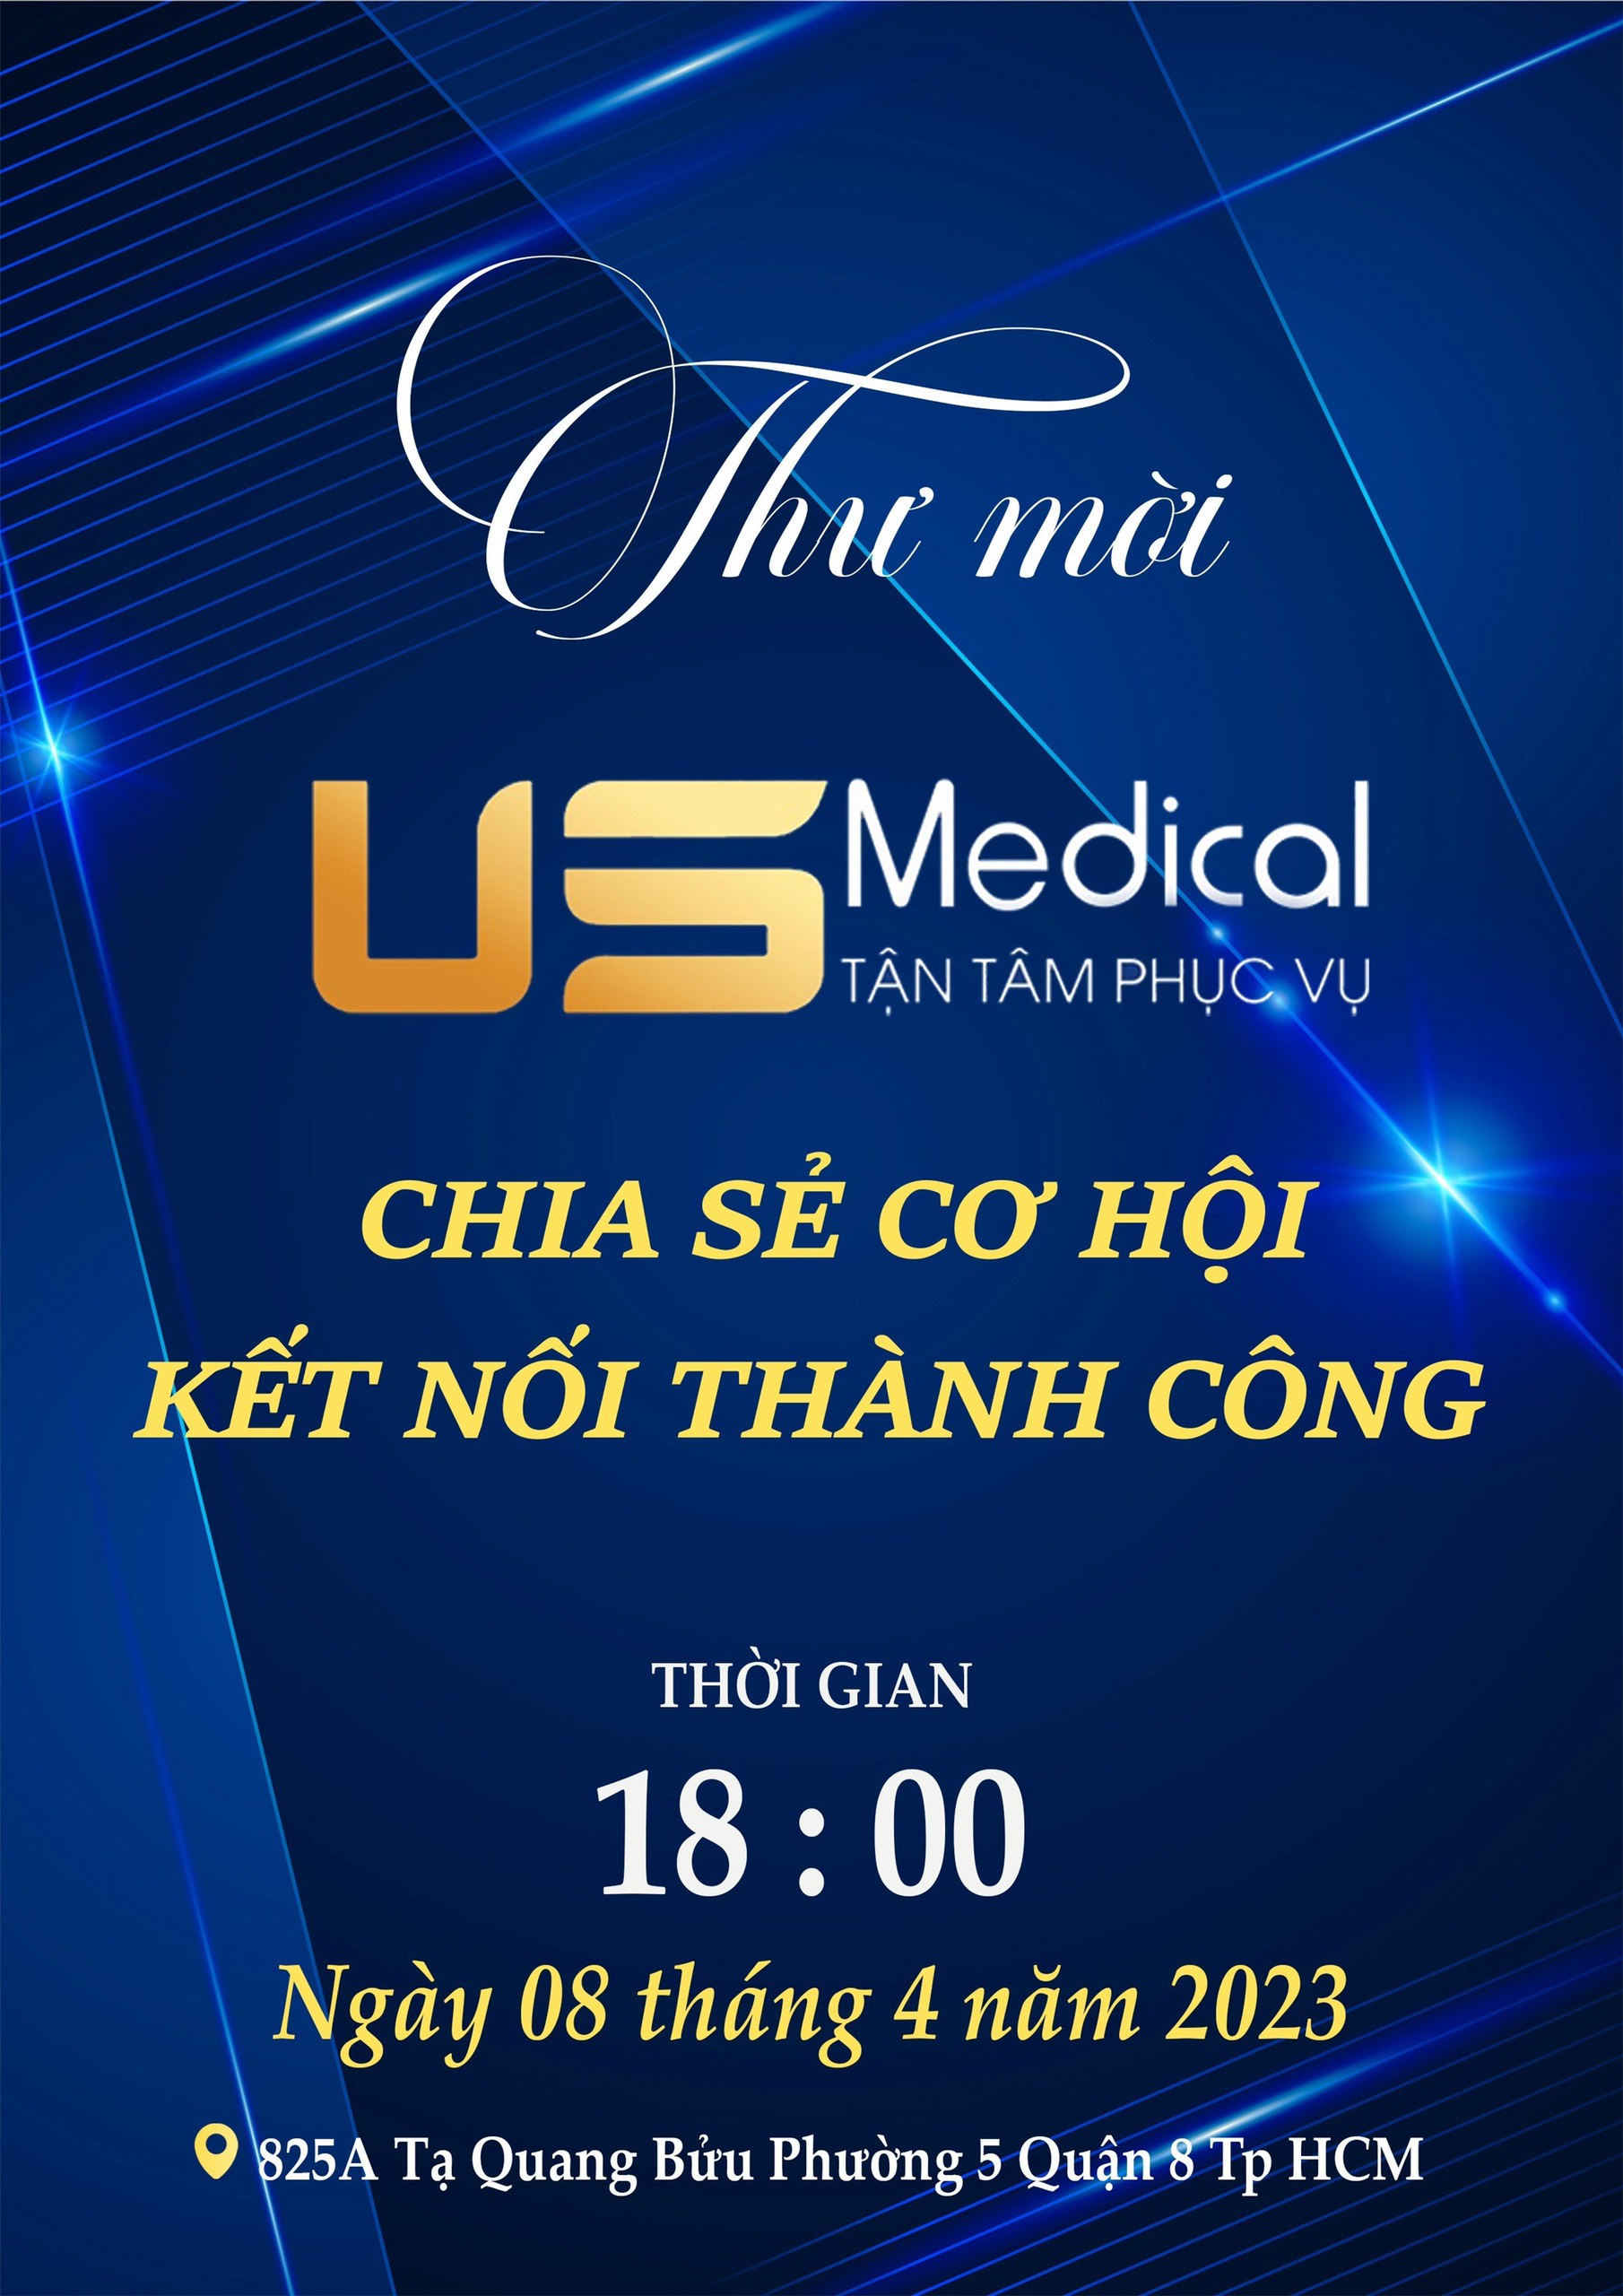 US Medical tổ chức chương trình Chia sẻ cơ hội - Kết nối thành công “vì sức khỏe người Việt”